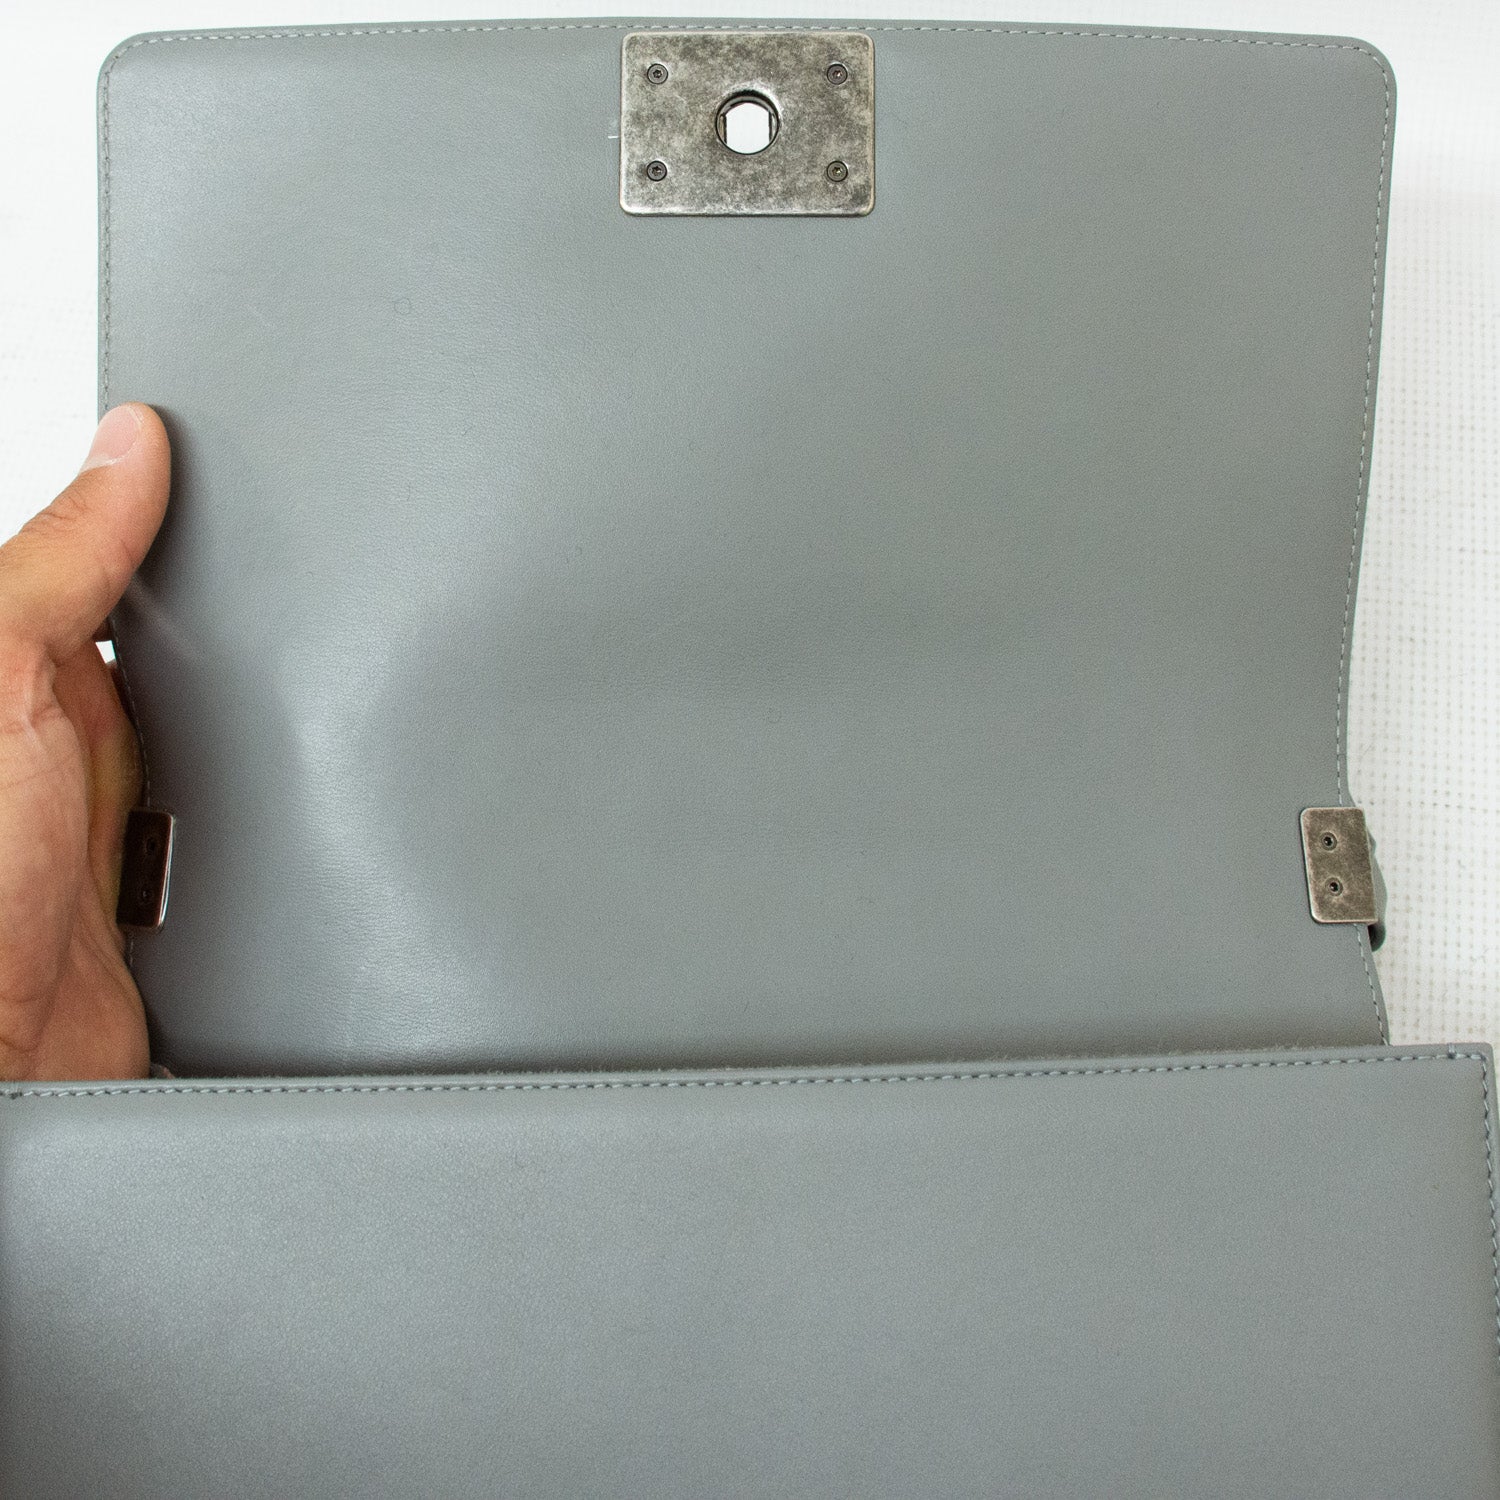 Chanel Medium Boy Bag - Grey